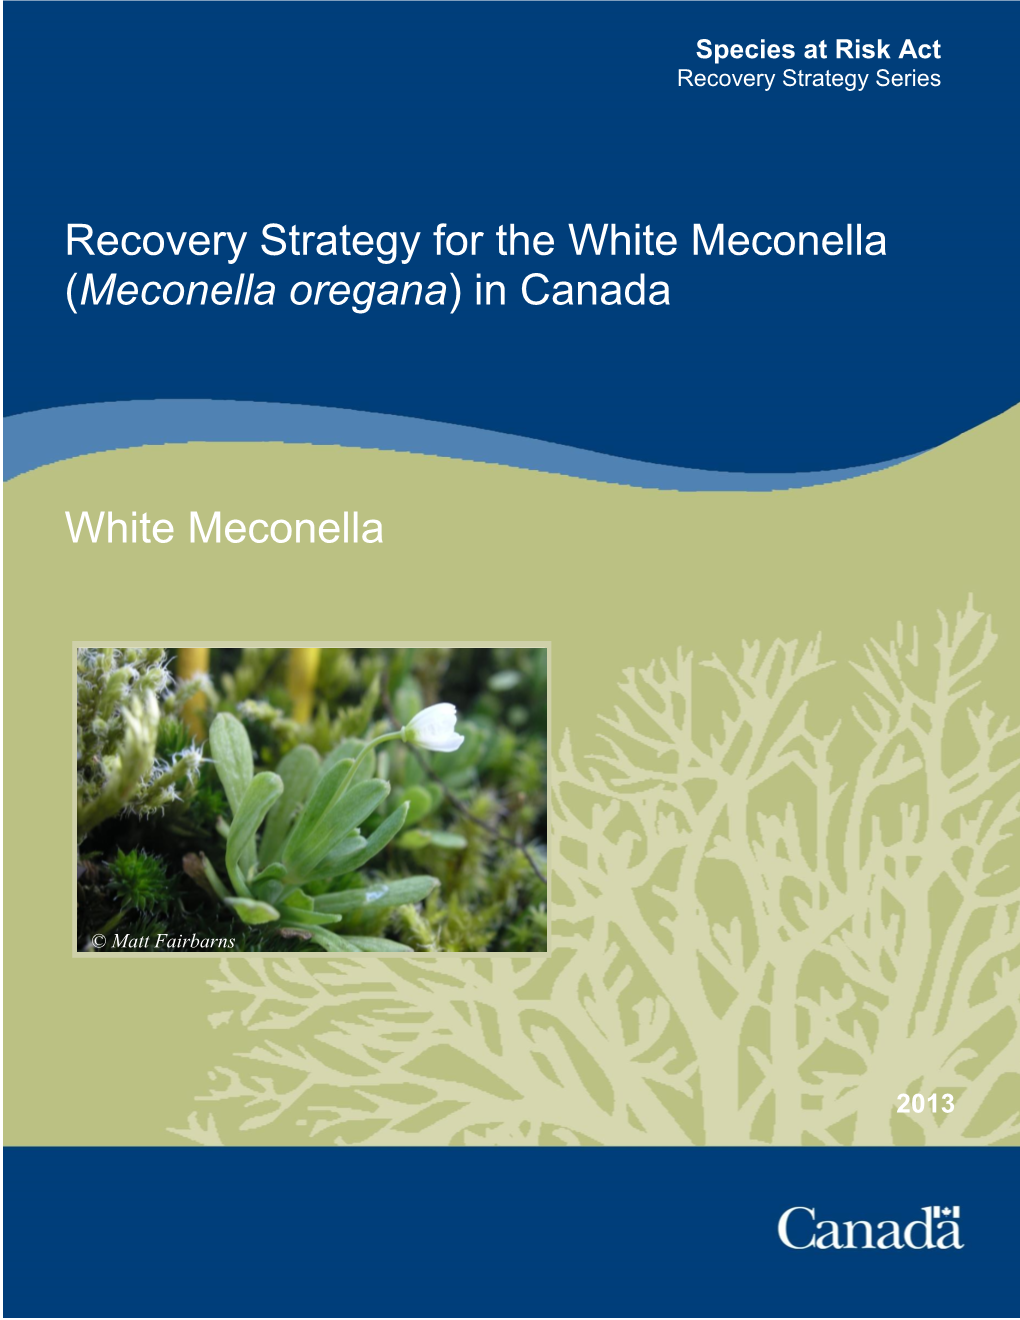 Recovery Strategy for the White Meconella (Meconella Oregana) in Canada